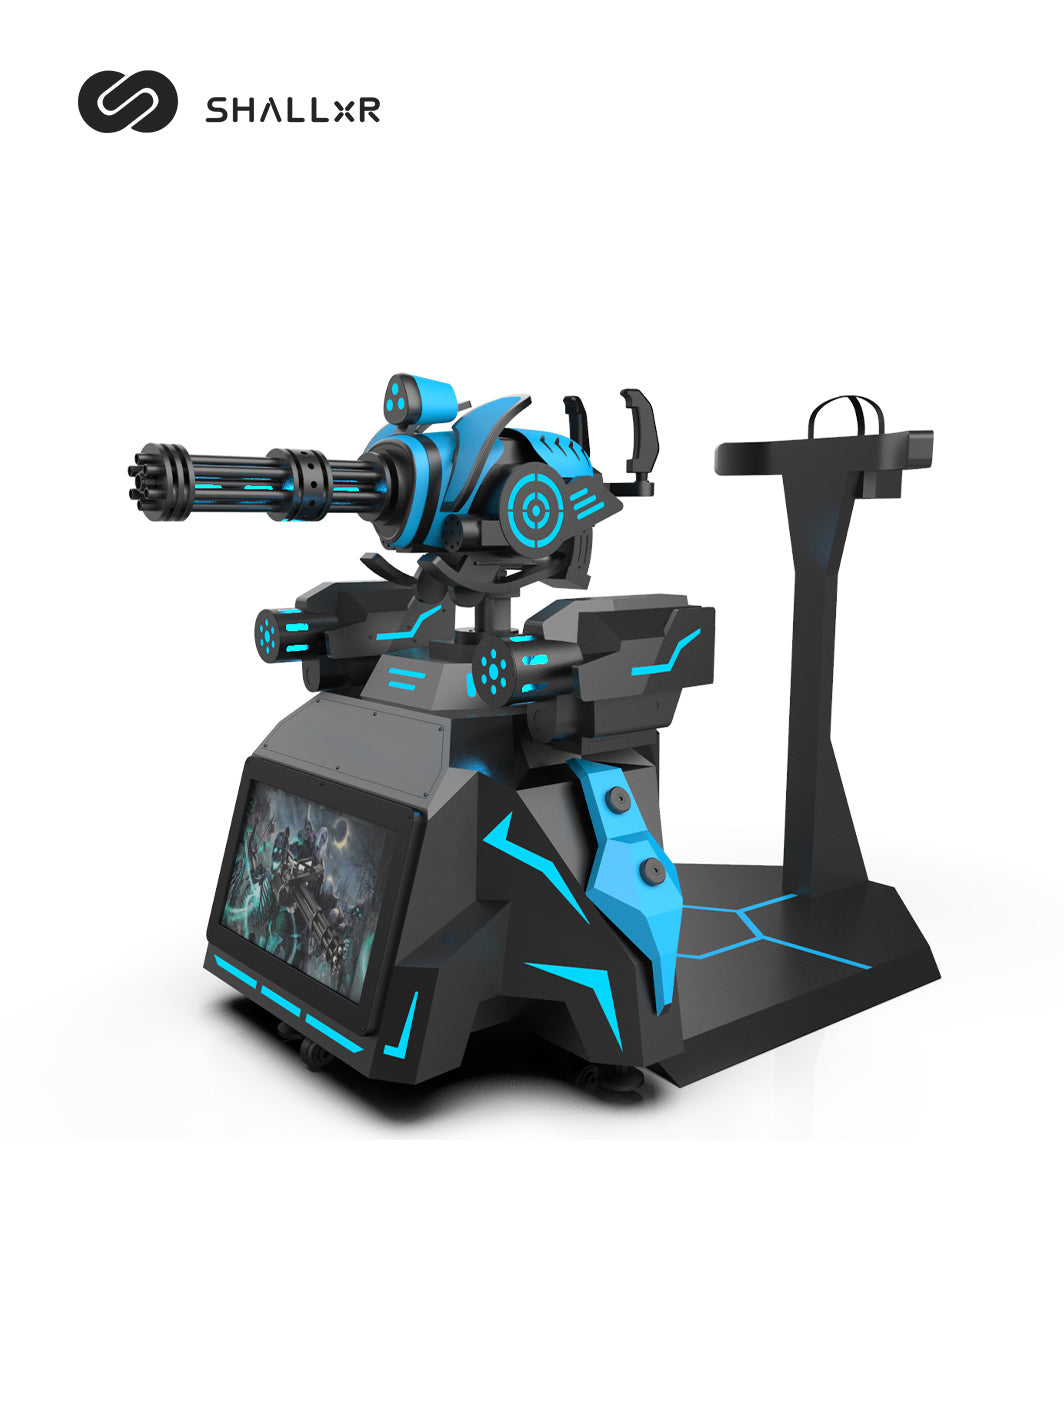 VR shooting simulator gun gatling - ShallxR